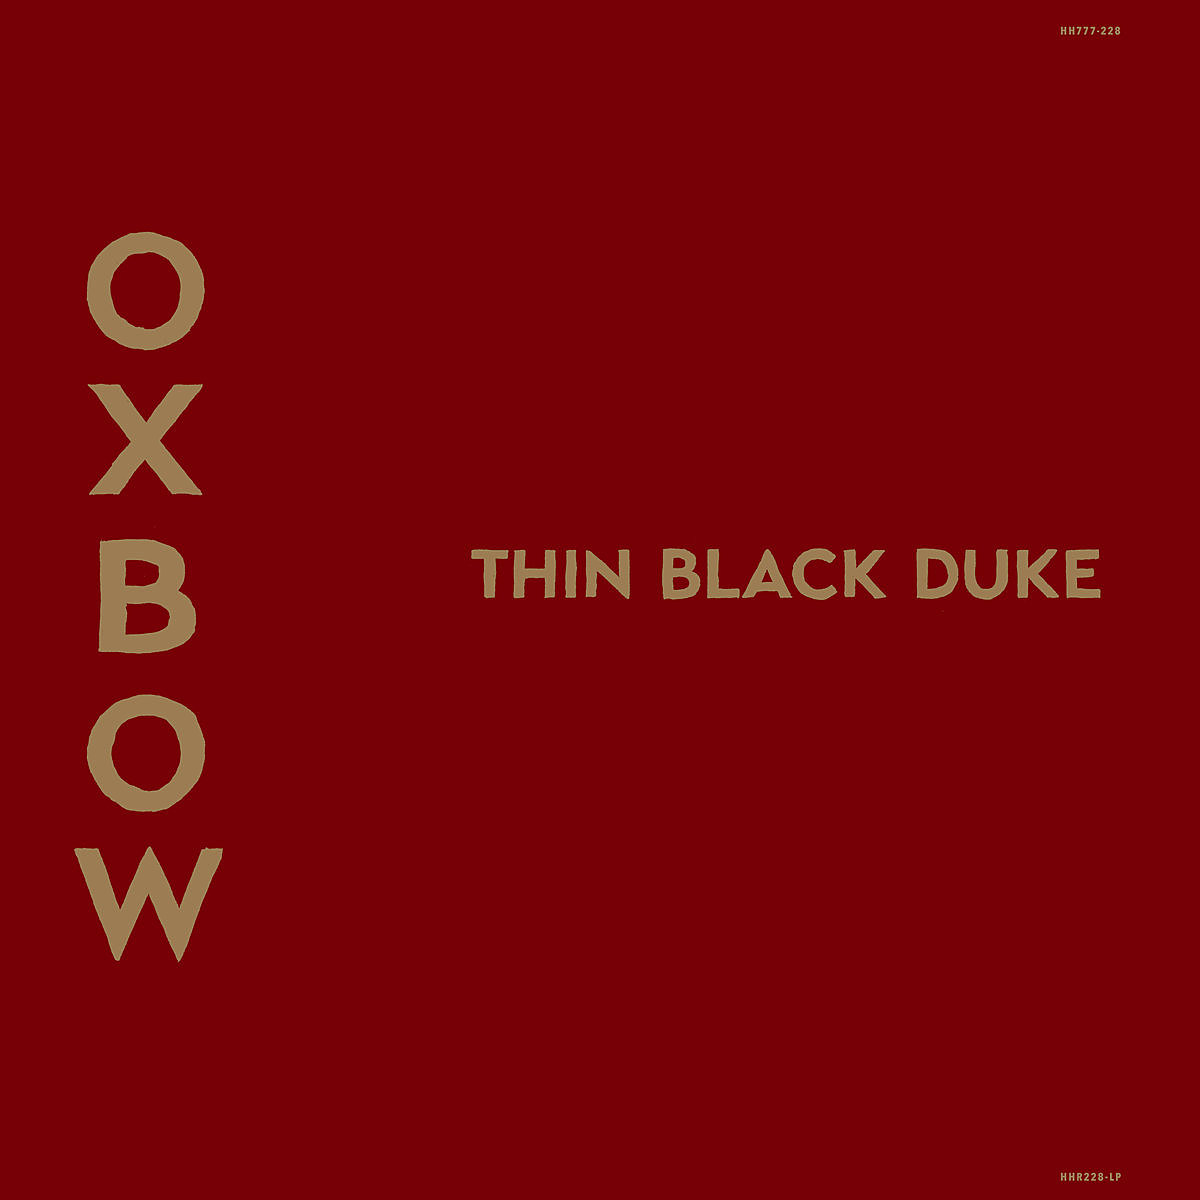 oxbow_thinblackduke